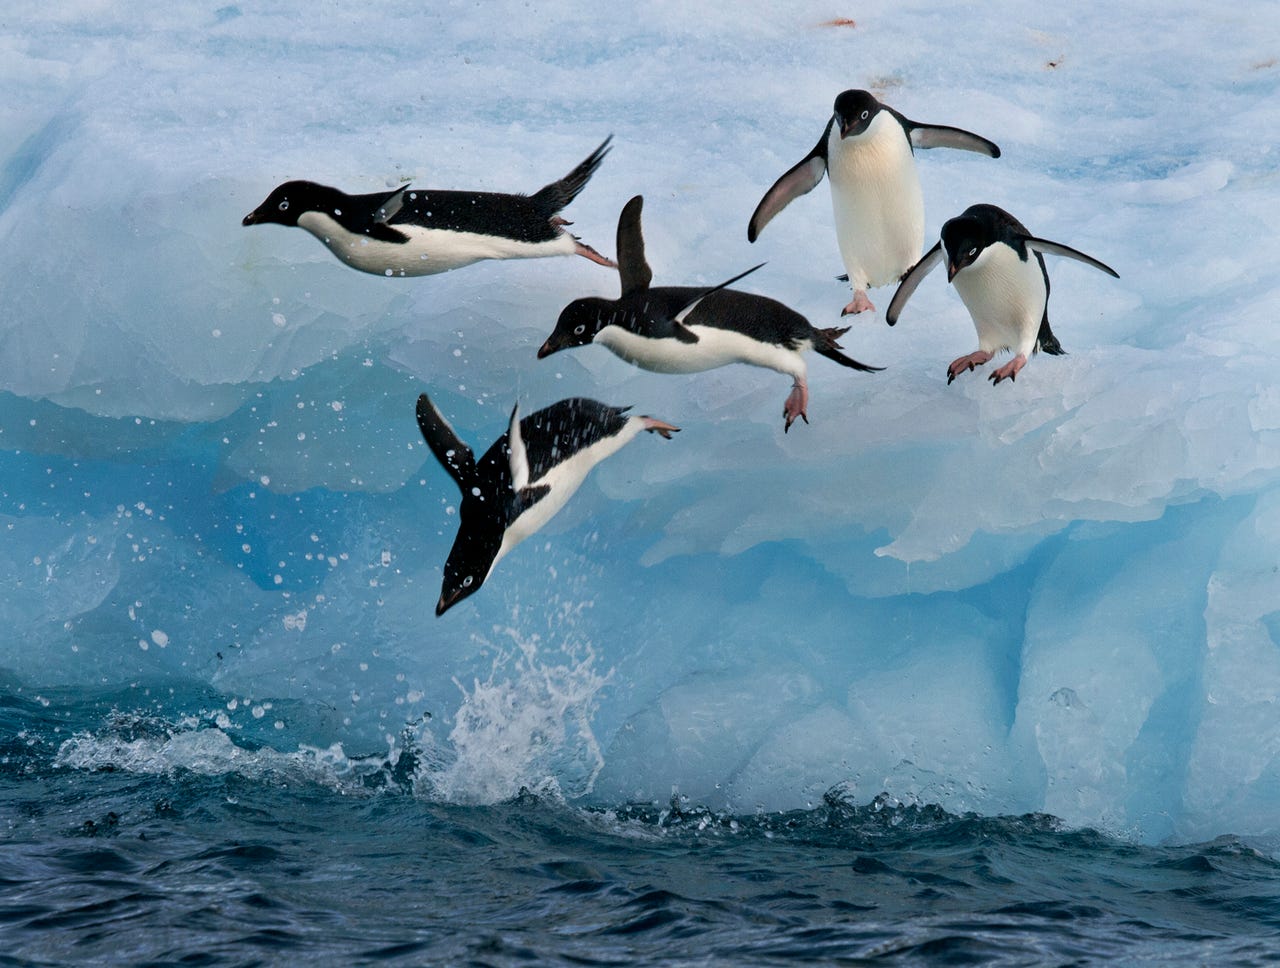 Cerca del extremo norte de la península Antártica, un grupo de pingüinos Adelia se lanzan desde un iceberg a las gélidas aguas del océano.